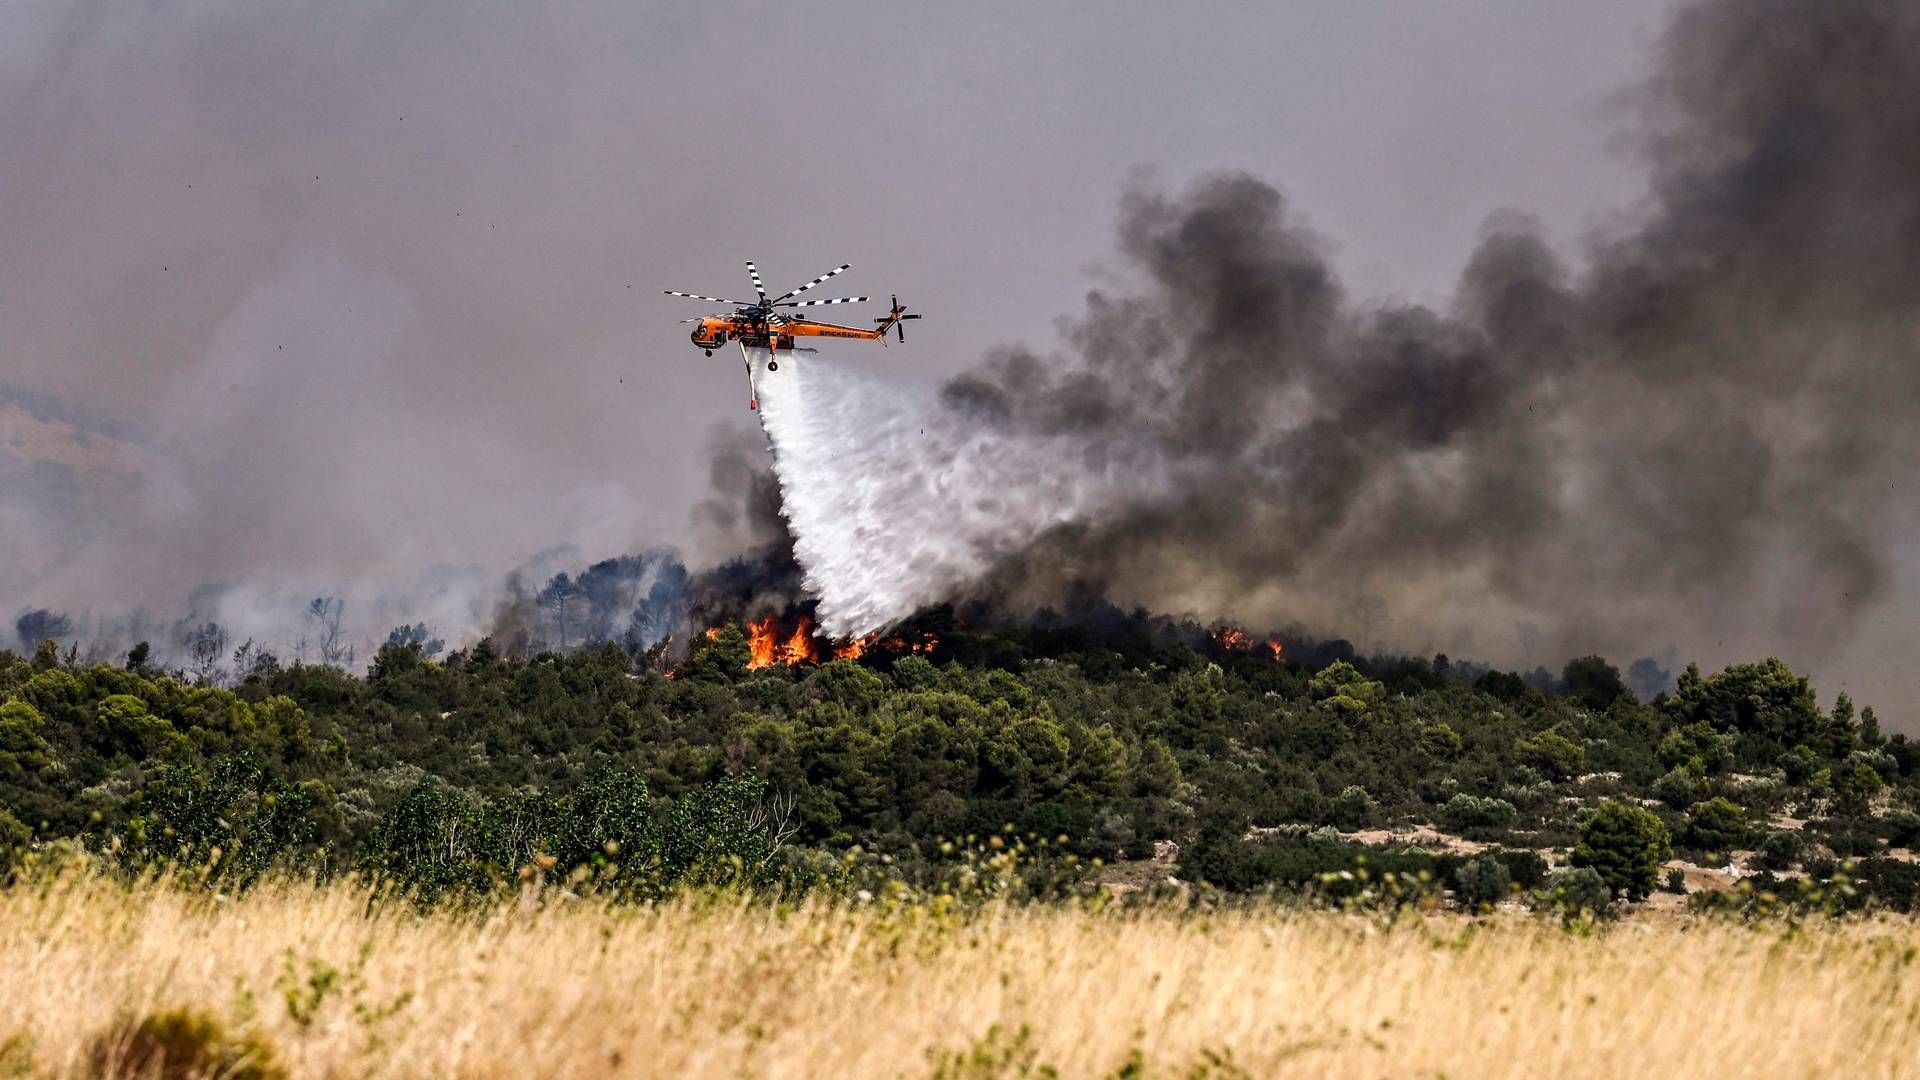 Udbredt tørke har forårsaget voldsomme naturbrande i blandt andet Dervenochoria nordvest for den græske hovedstad Athen. | Foto: Spyros Bakalis/AFP/Ritzau Scanpix